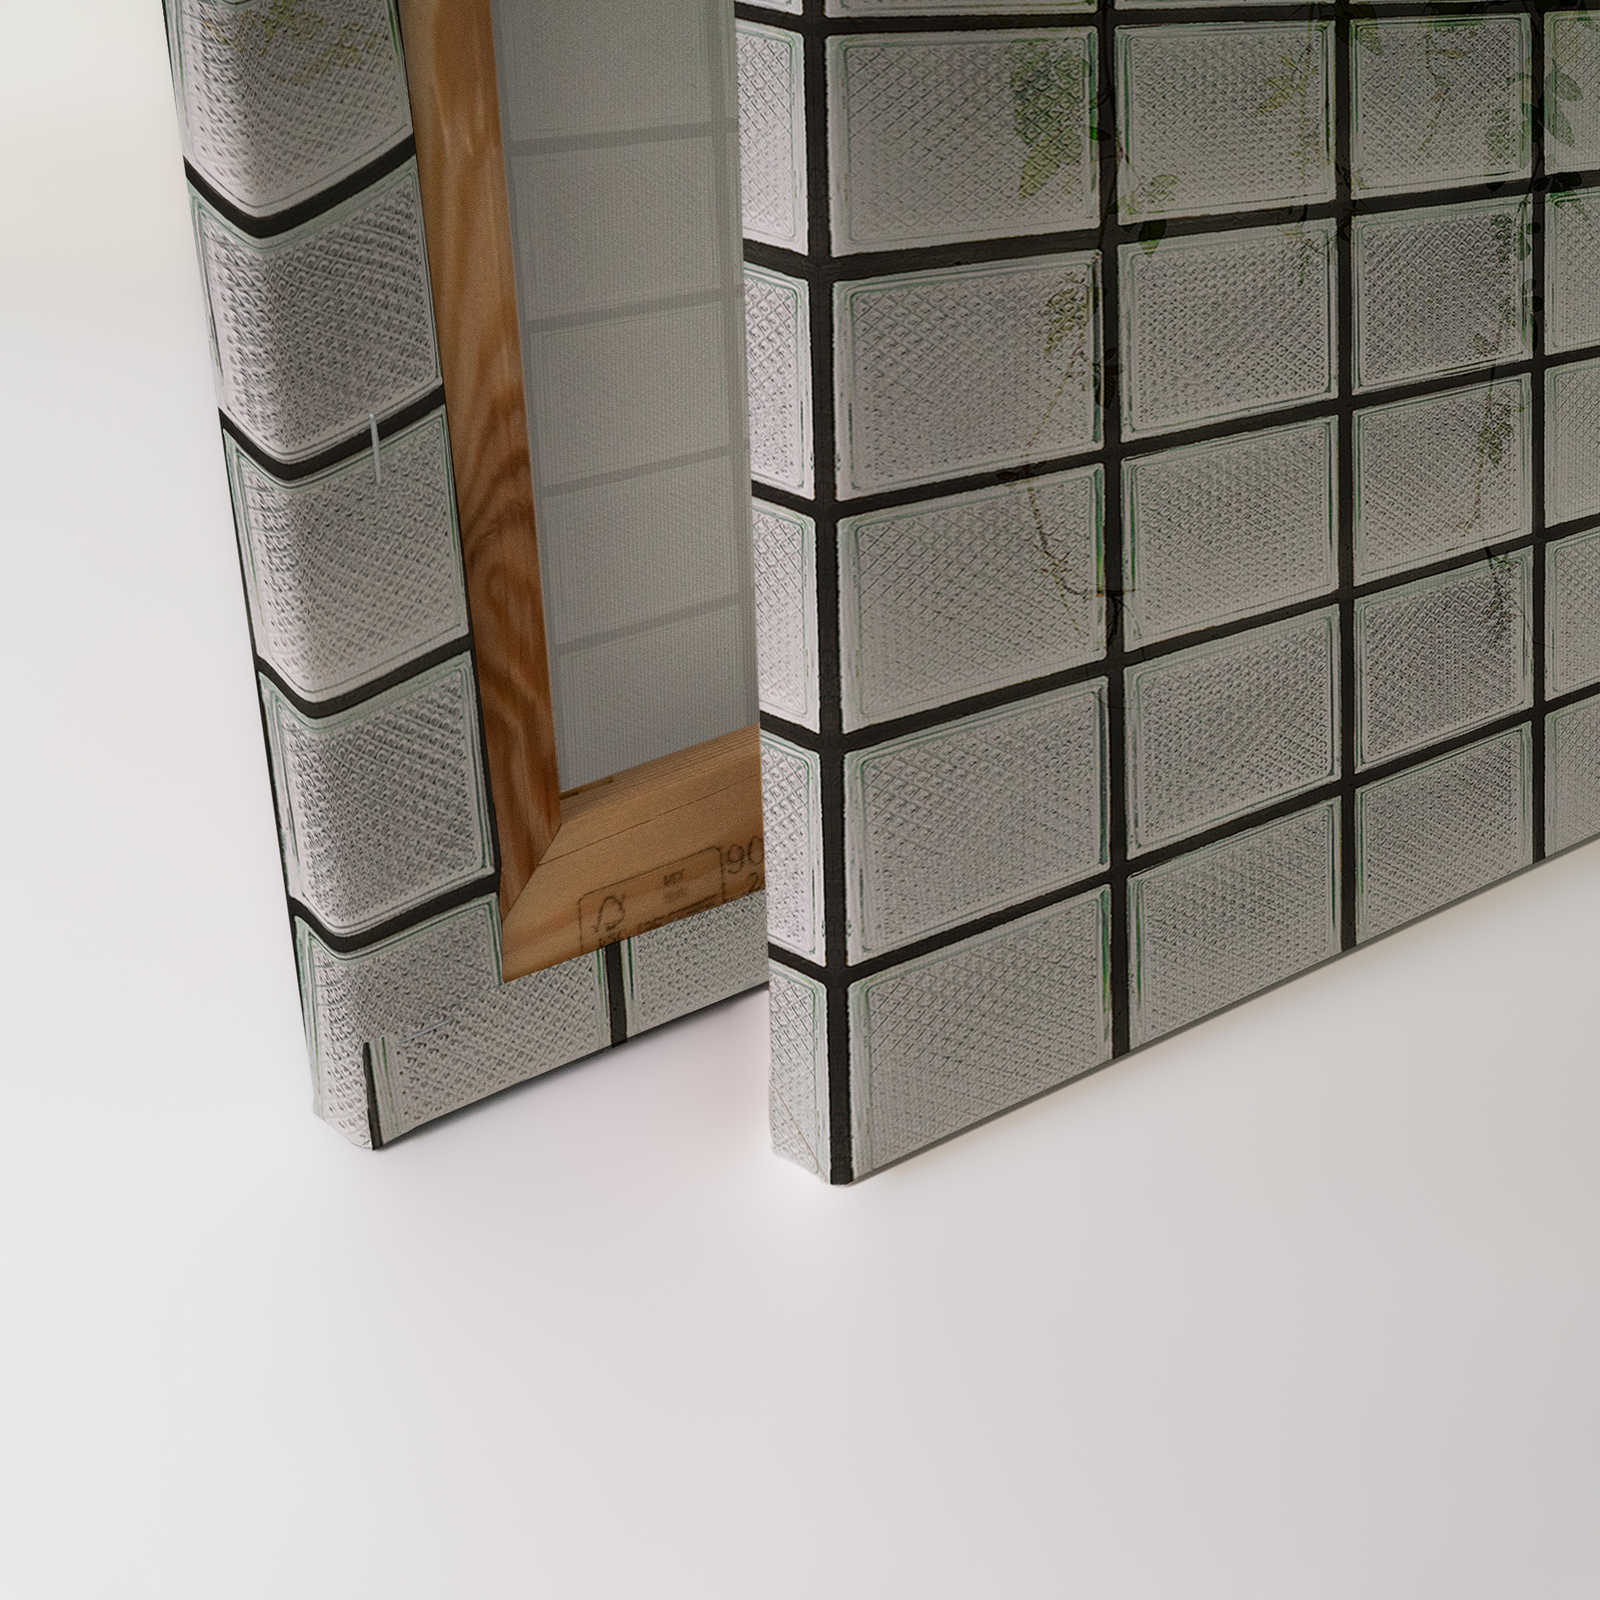             Green House 2 - Toile de serre Feuilles & briques de verre - 1,20 m x 0,80 m
        